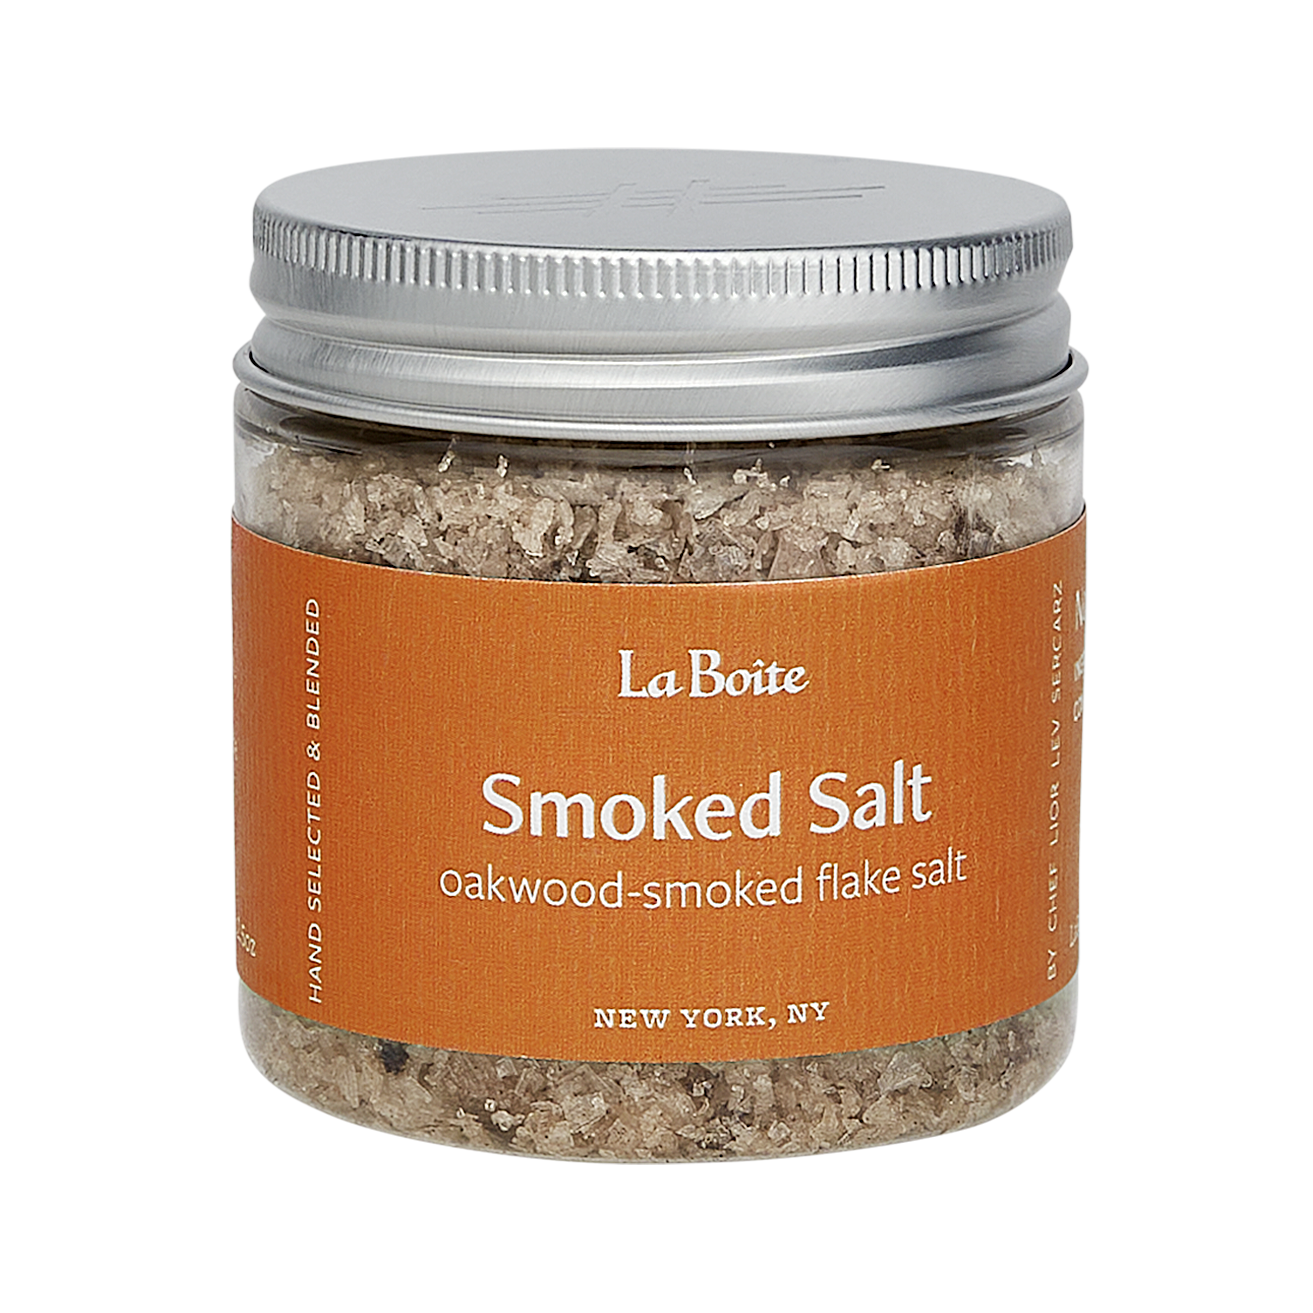 Smoked Salt